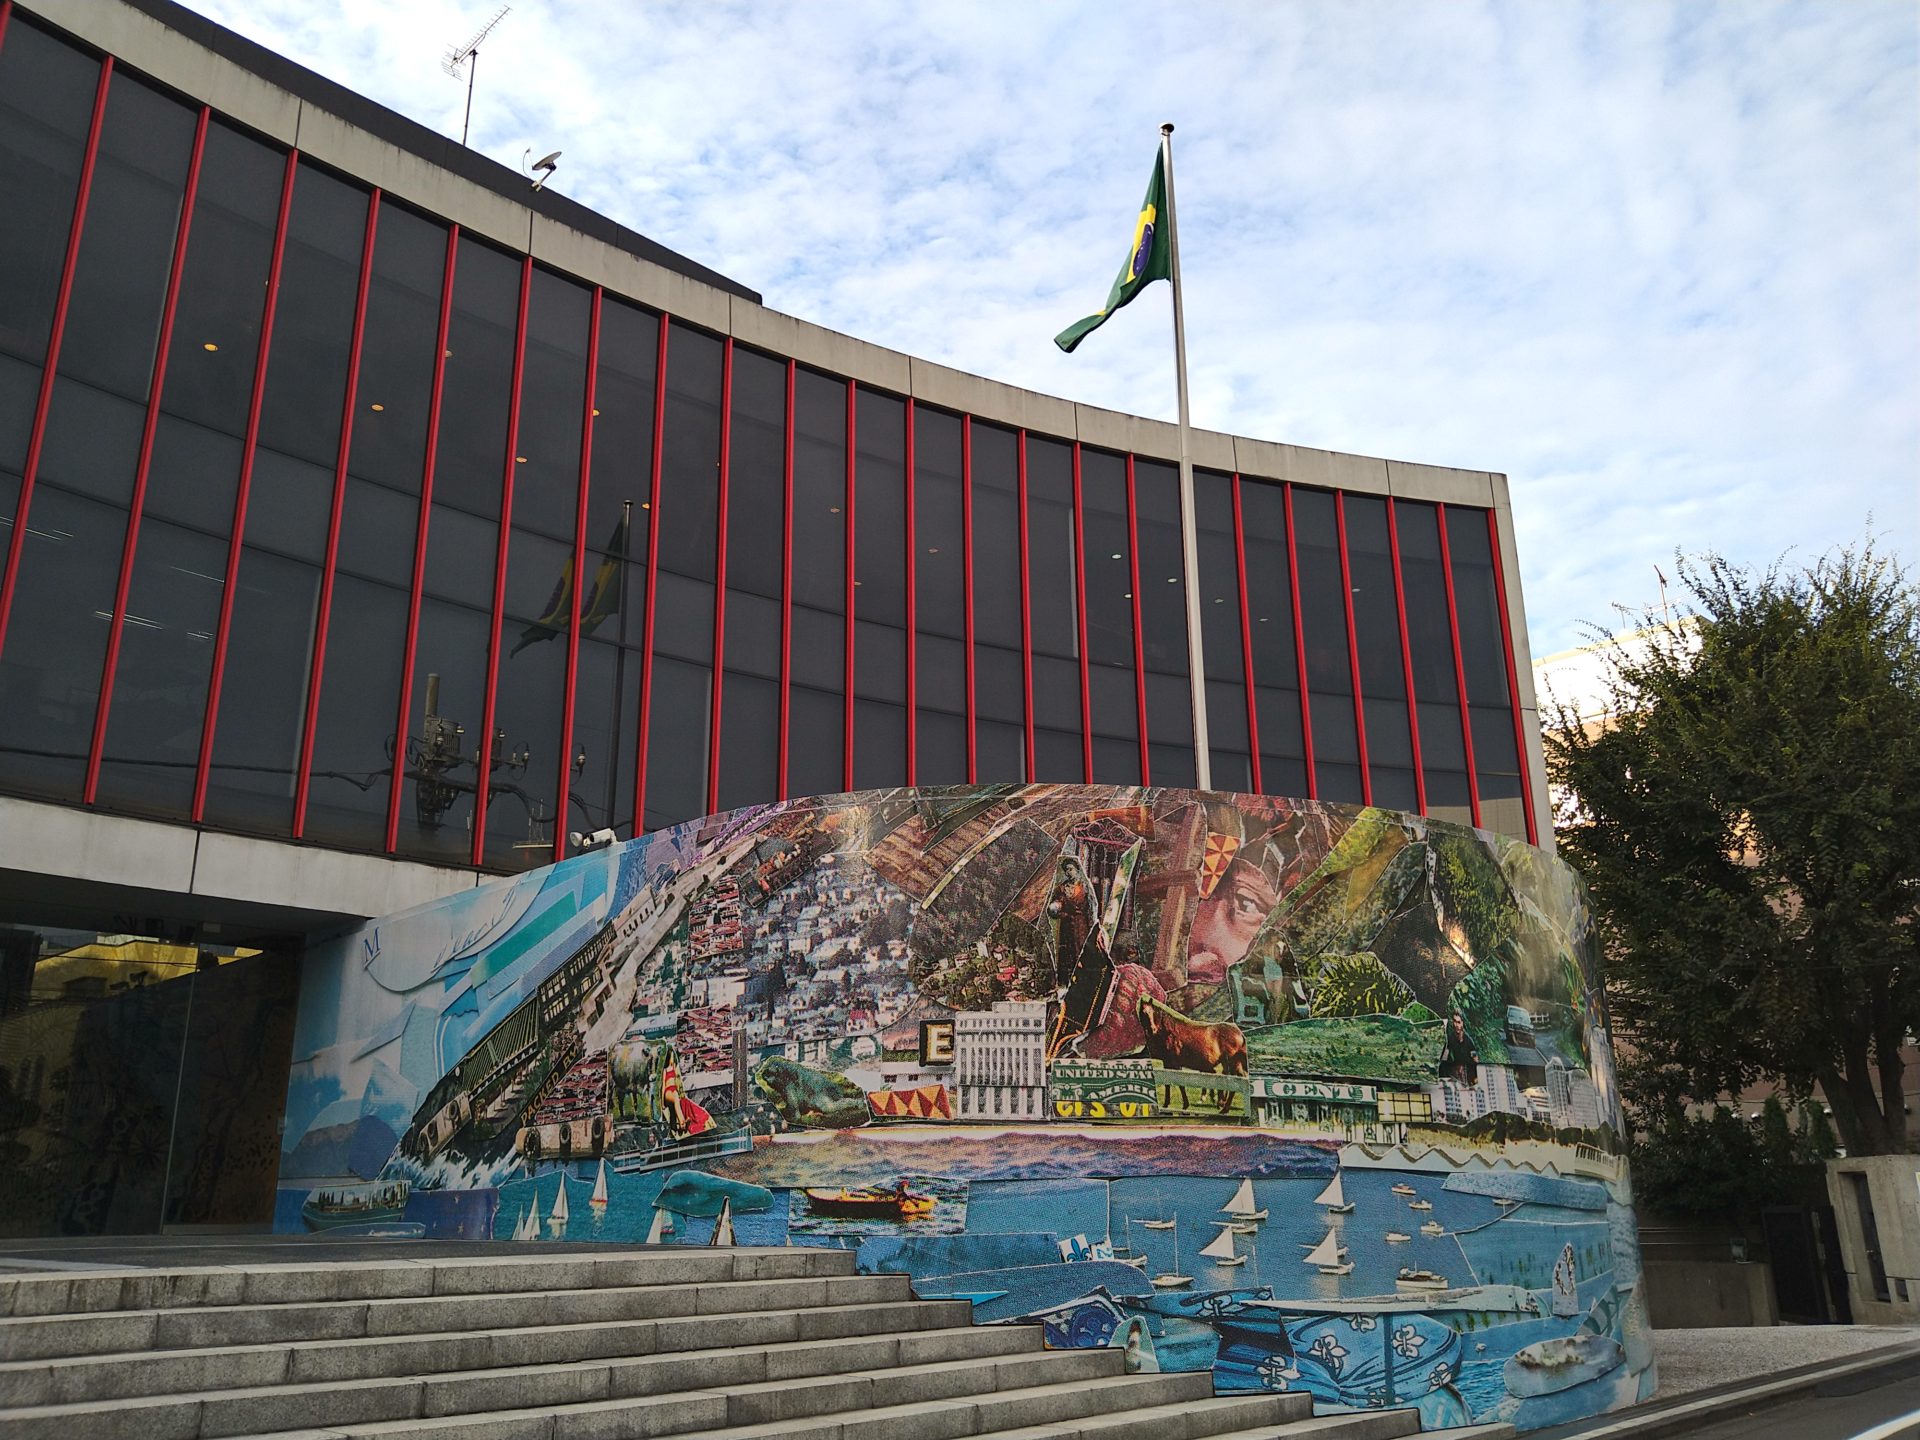 ブラジル大使館